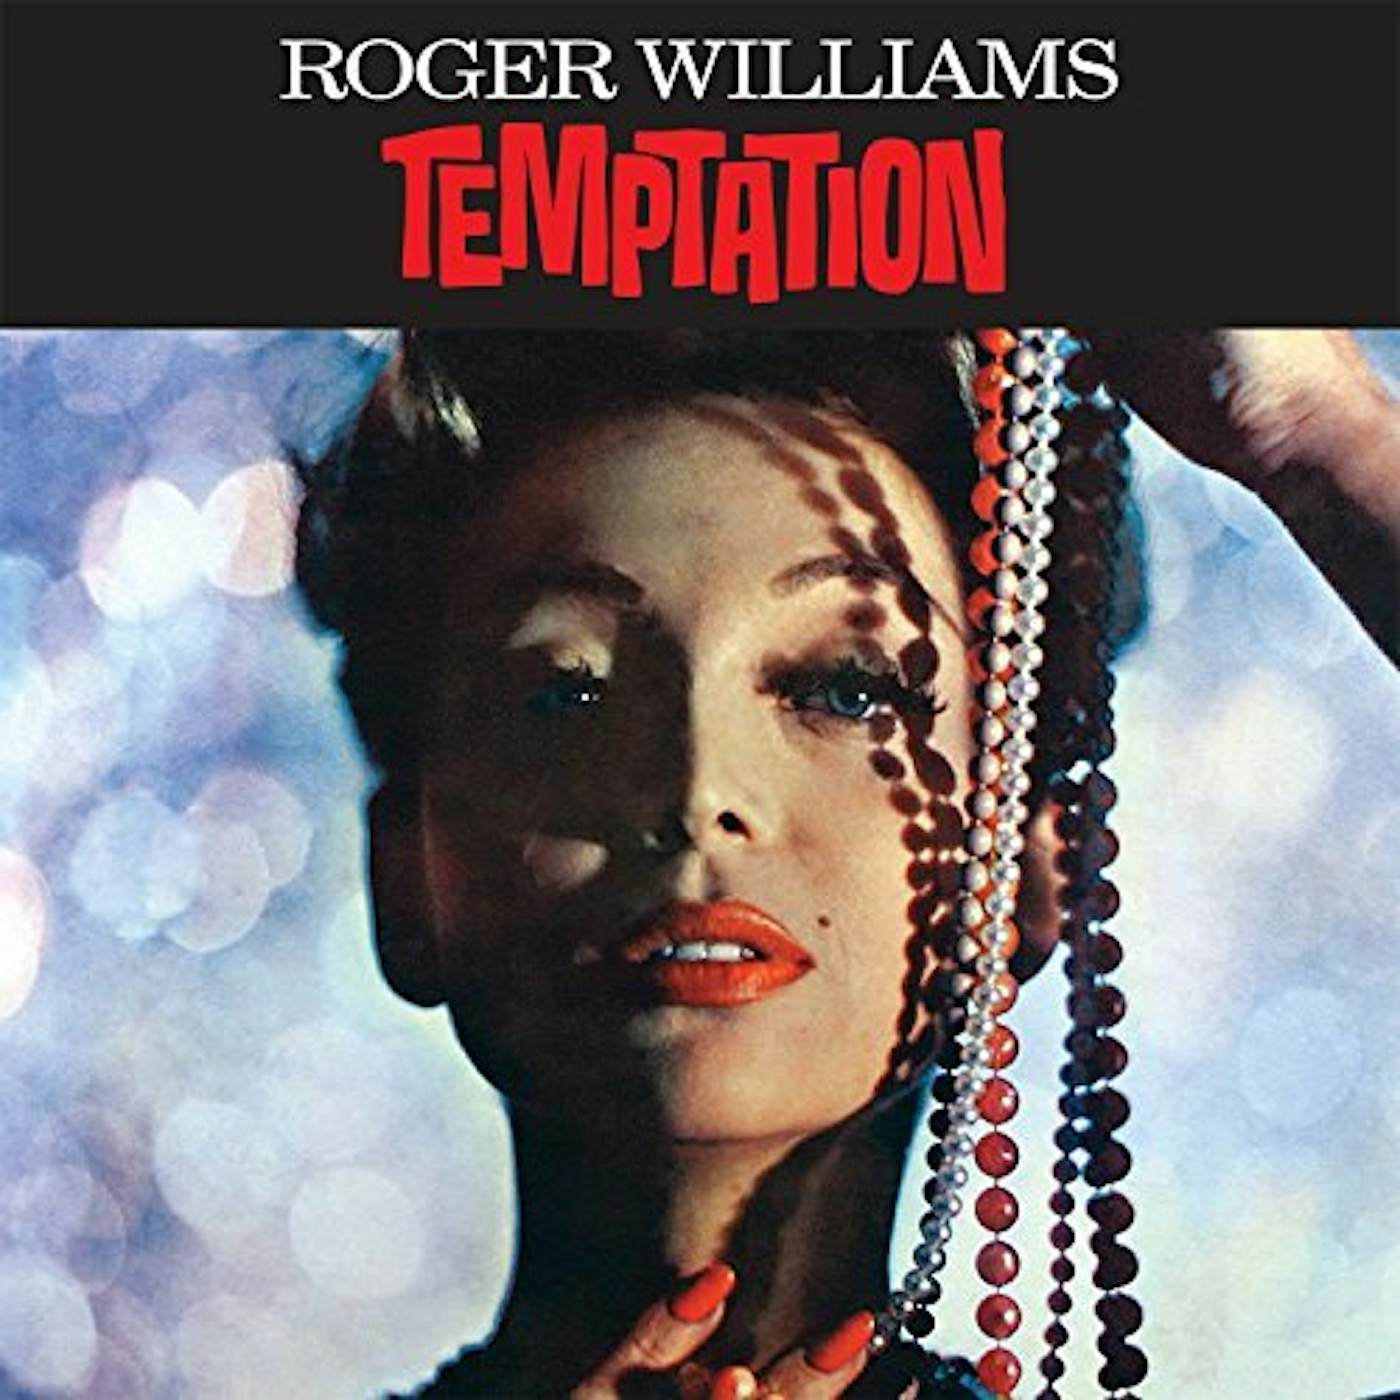 Roger Williams TEMPTATION CD